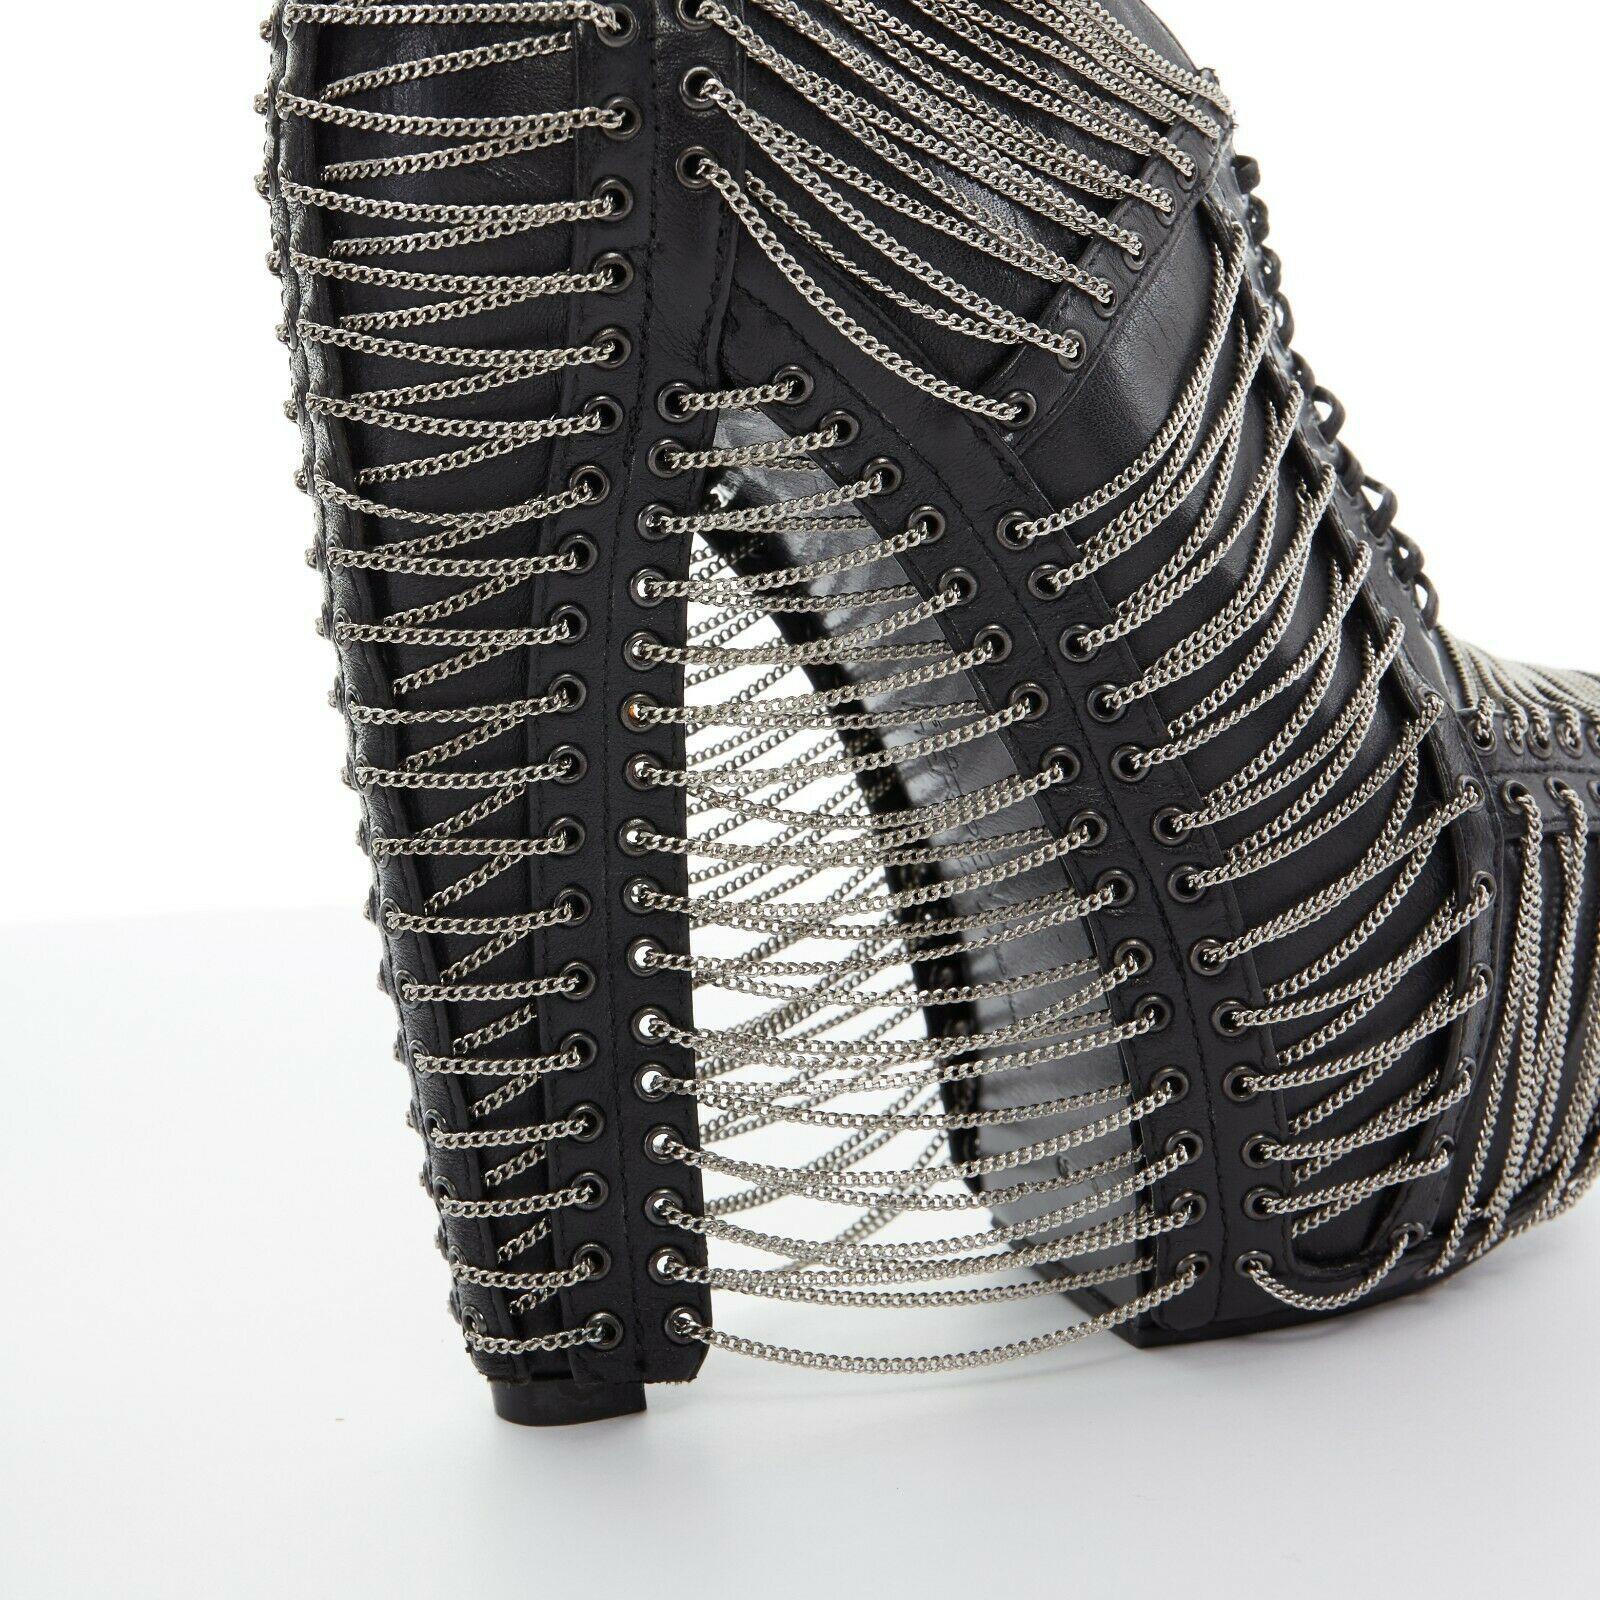 new IRIS VAN HERPEN UNITED NUDE black silver chain platform ankle boot heel EU39 1